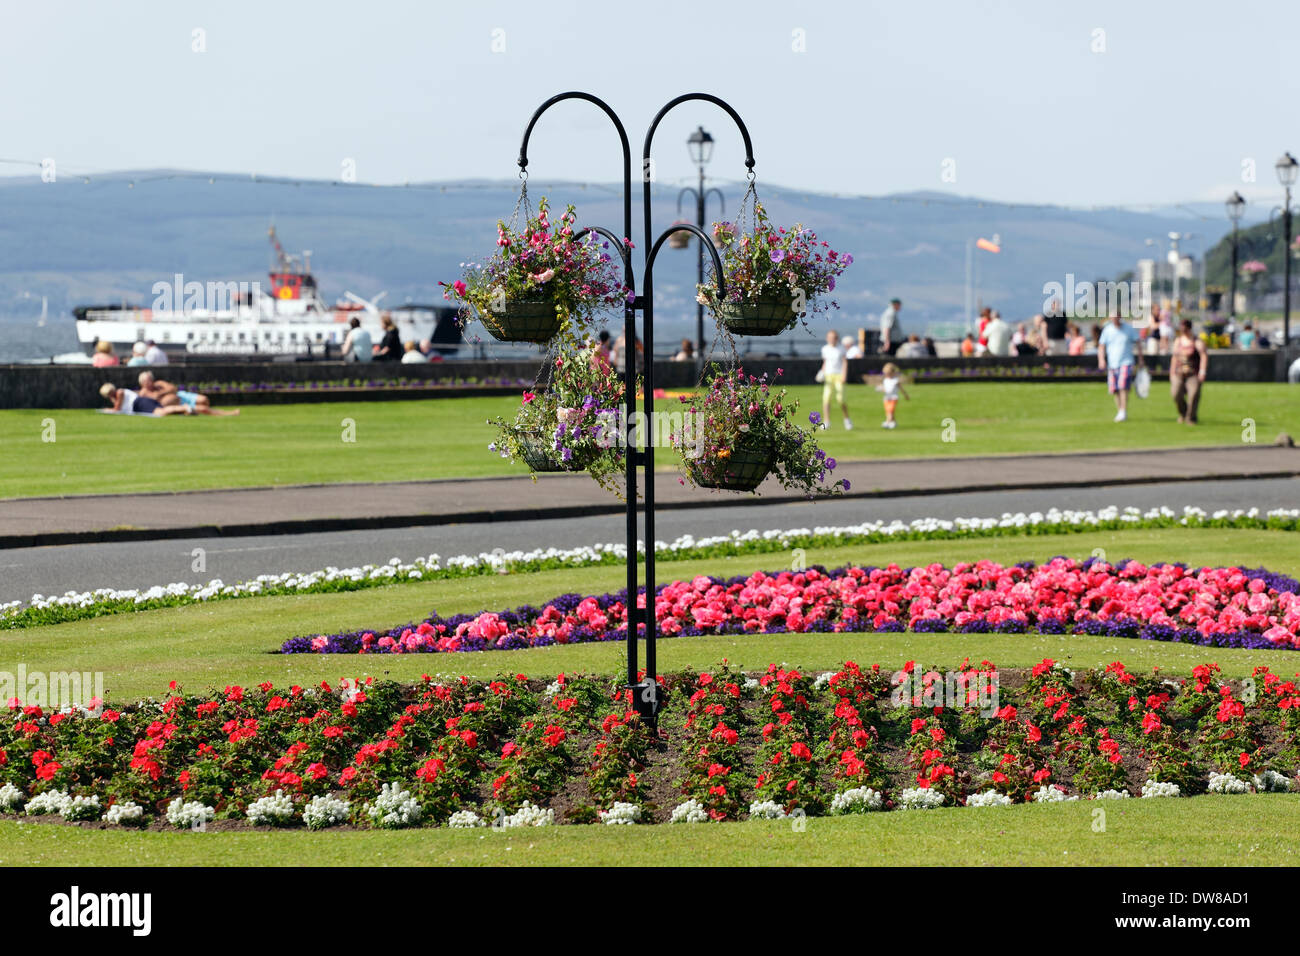 Paniers suspendus en été et exposition florale dans la ville balnéaire de Largs dans le nord de Ayrshire, Écosse, Royaume-Uni Banque D'Images